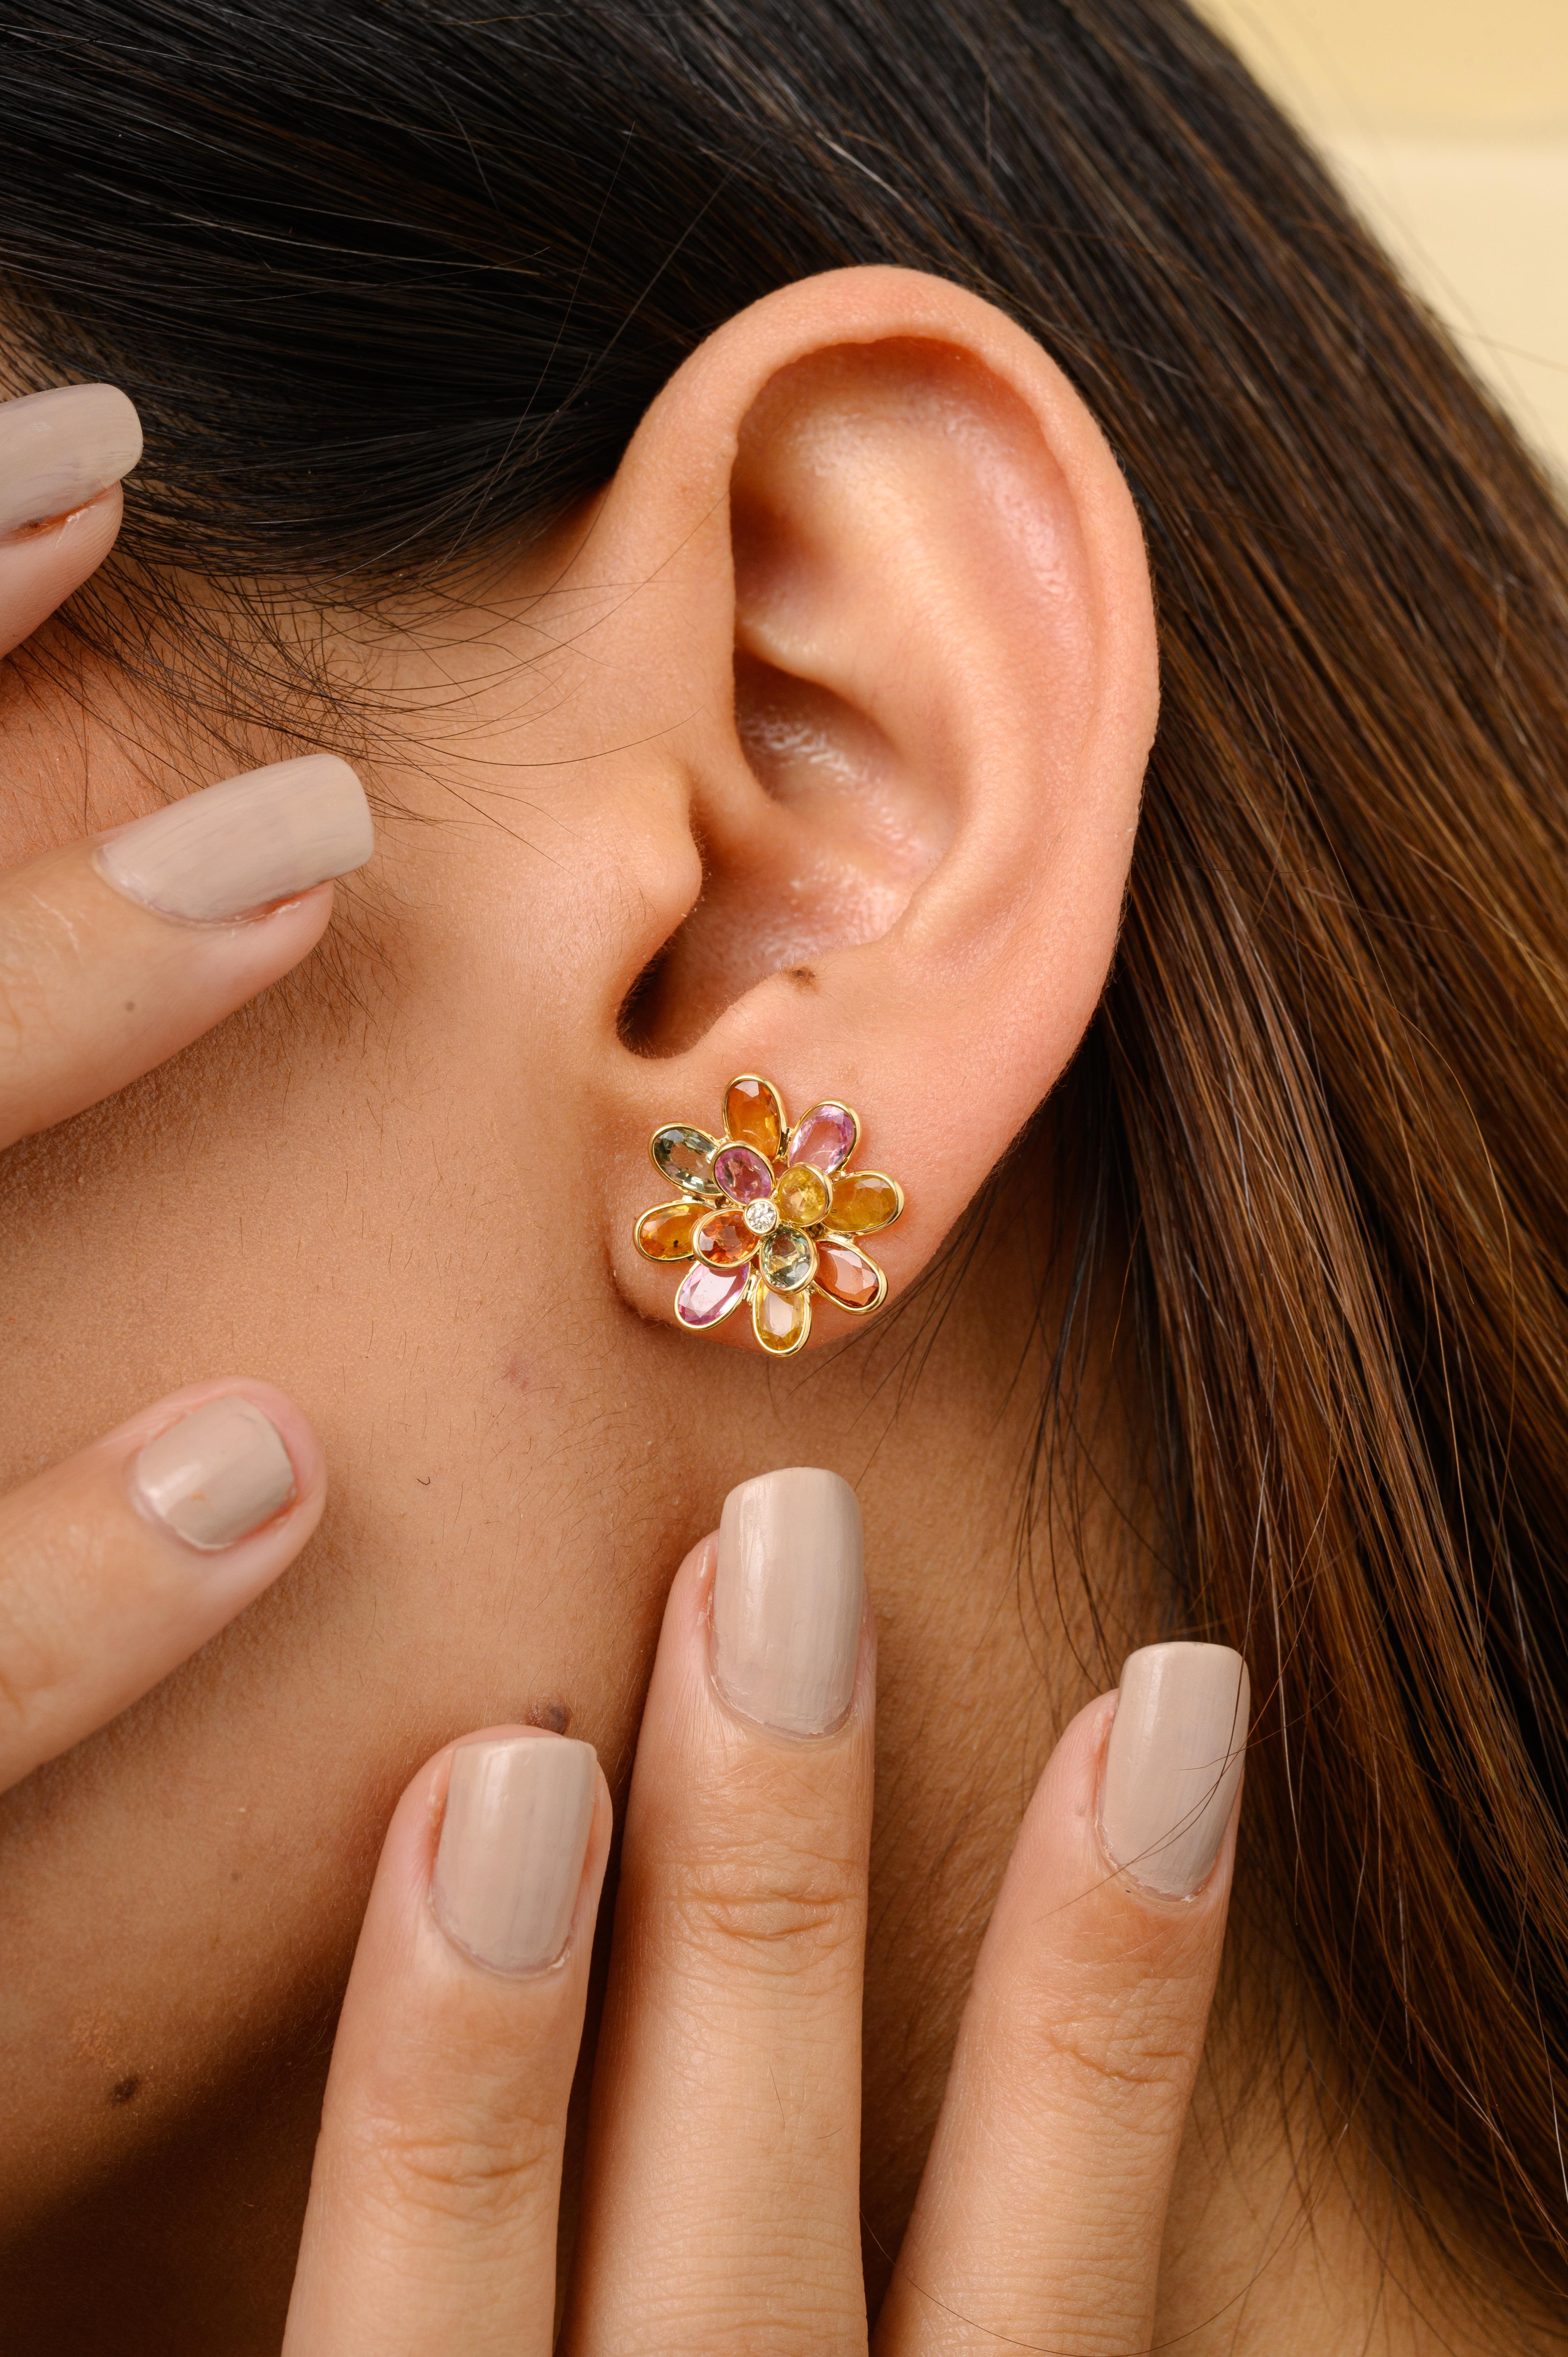 Multi Sapphire Blossom Flower Stud Earrings mit Diamanten für Sie in 18K Gold, um ein Statement mit Ihrem Look zu machen. Sie brauchen Ohrstecker, um mit Ihrem Look ein Statement zu setzen. Diese Ohrringe sorgen für einen funkelnden, luxuriösen Look